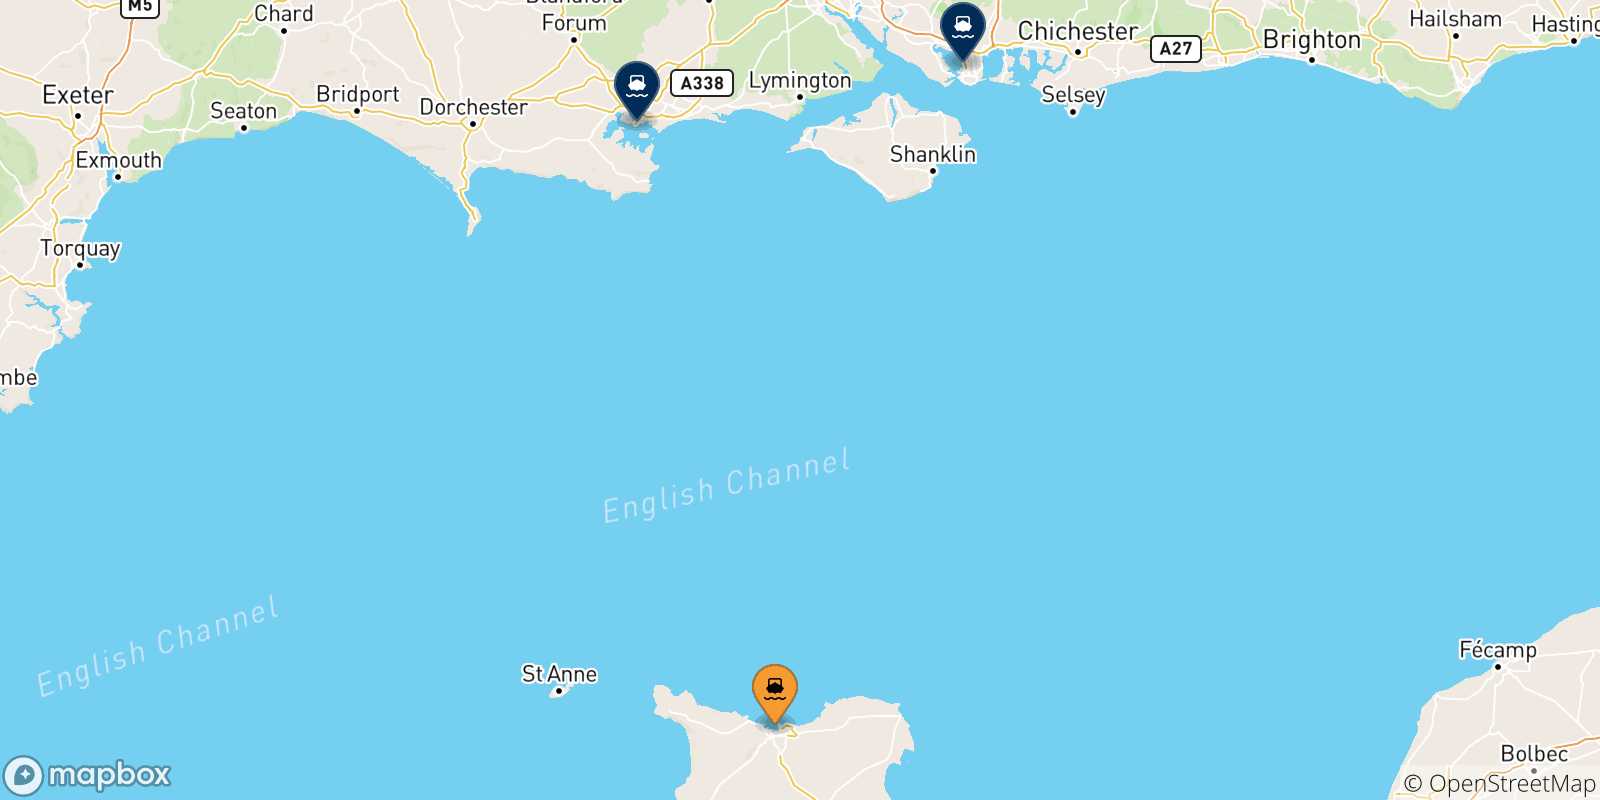 Mappa delle possibili rotte tra Cherbourg e l'Inghilterra